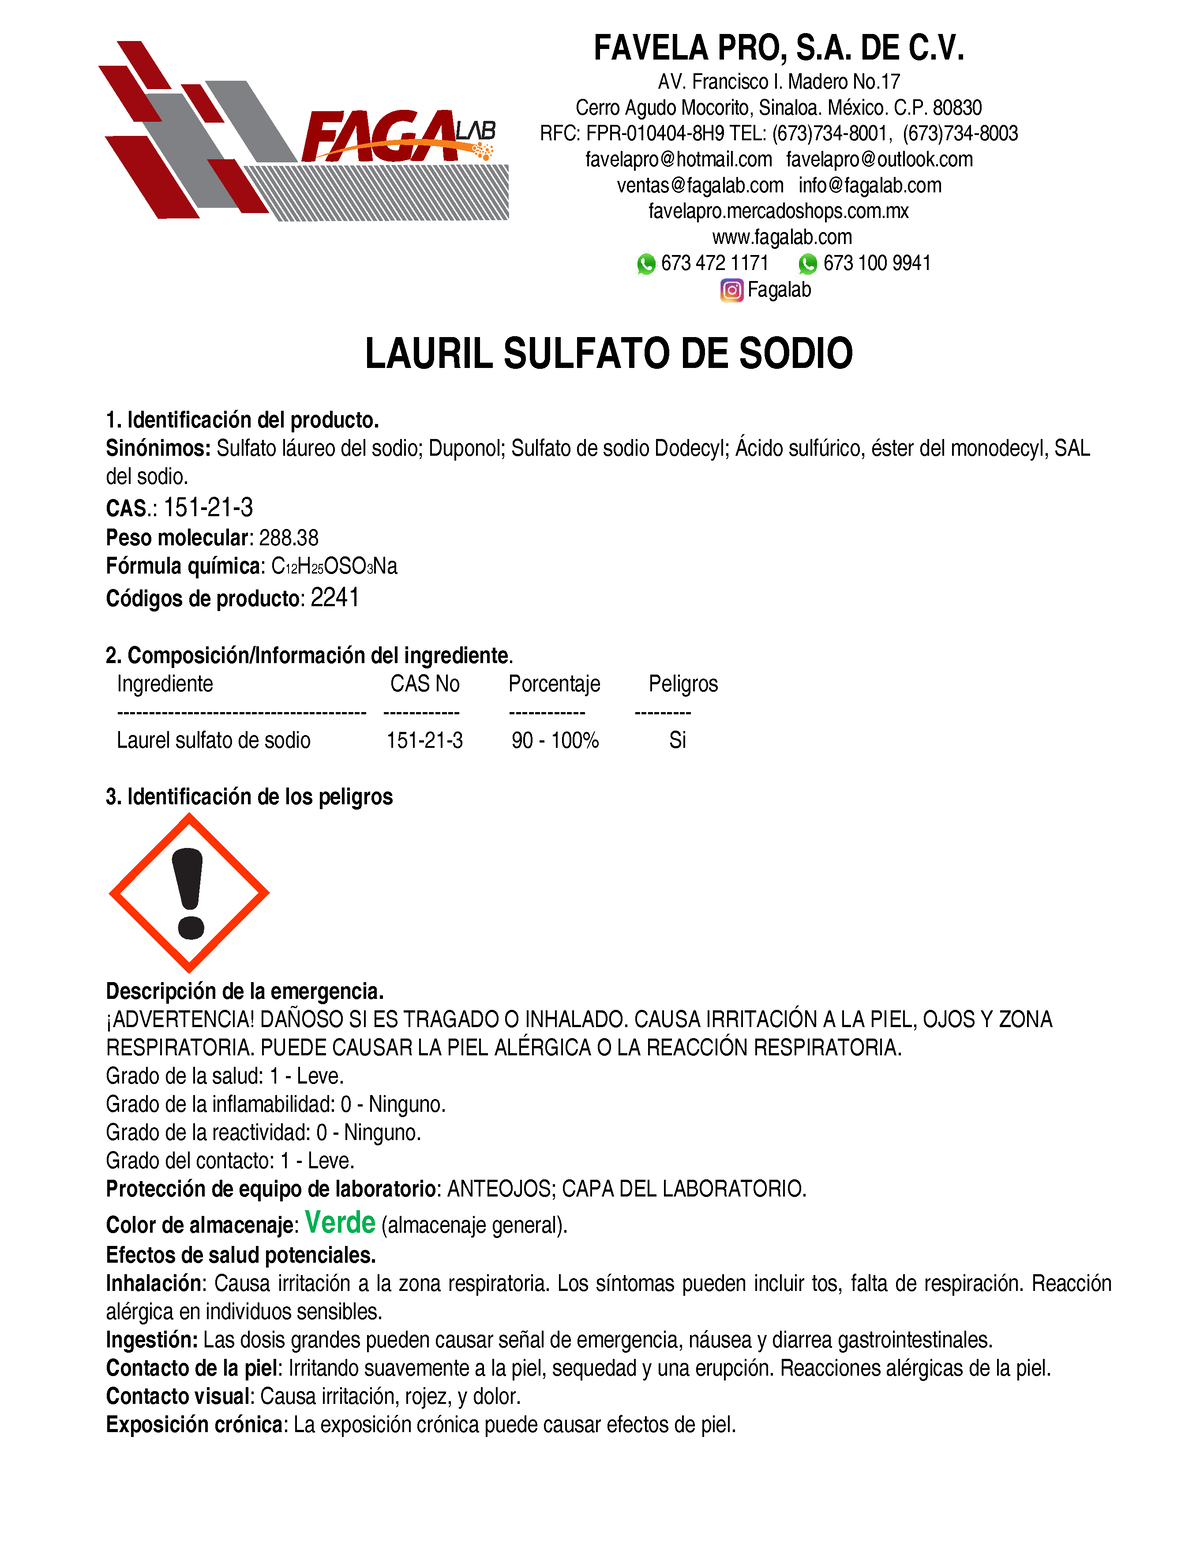 Hoja De Seguridad Lauril Sulfato De Sodio Lauril Sulfato De Sodio 1 Identificación Del 4254